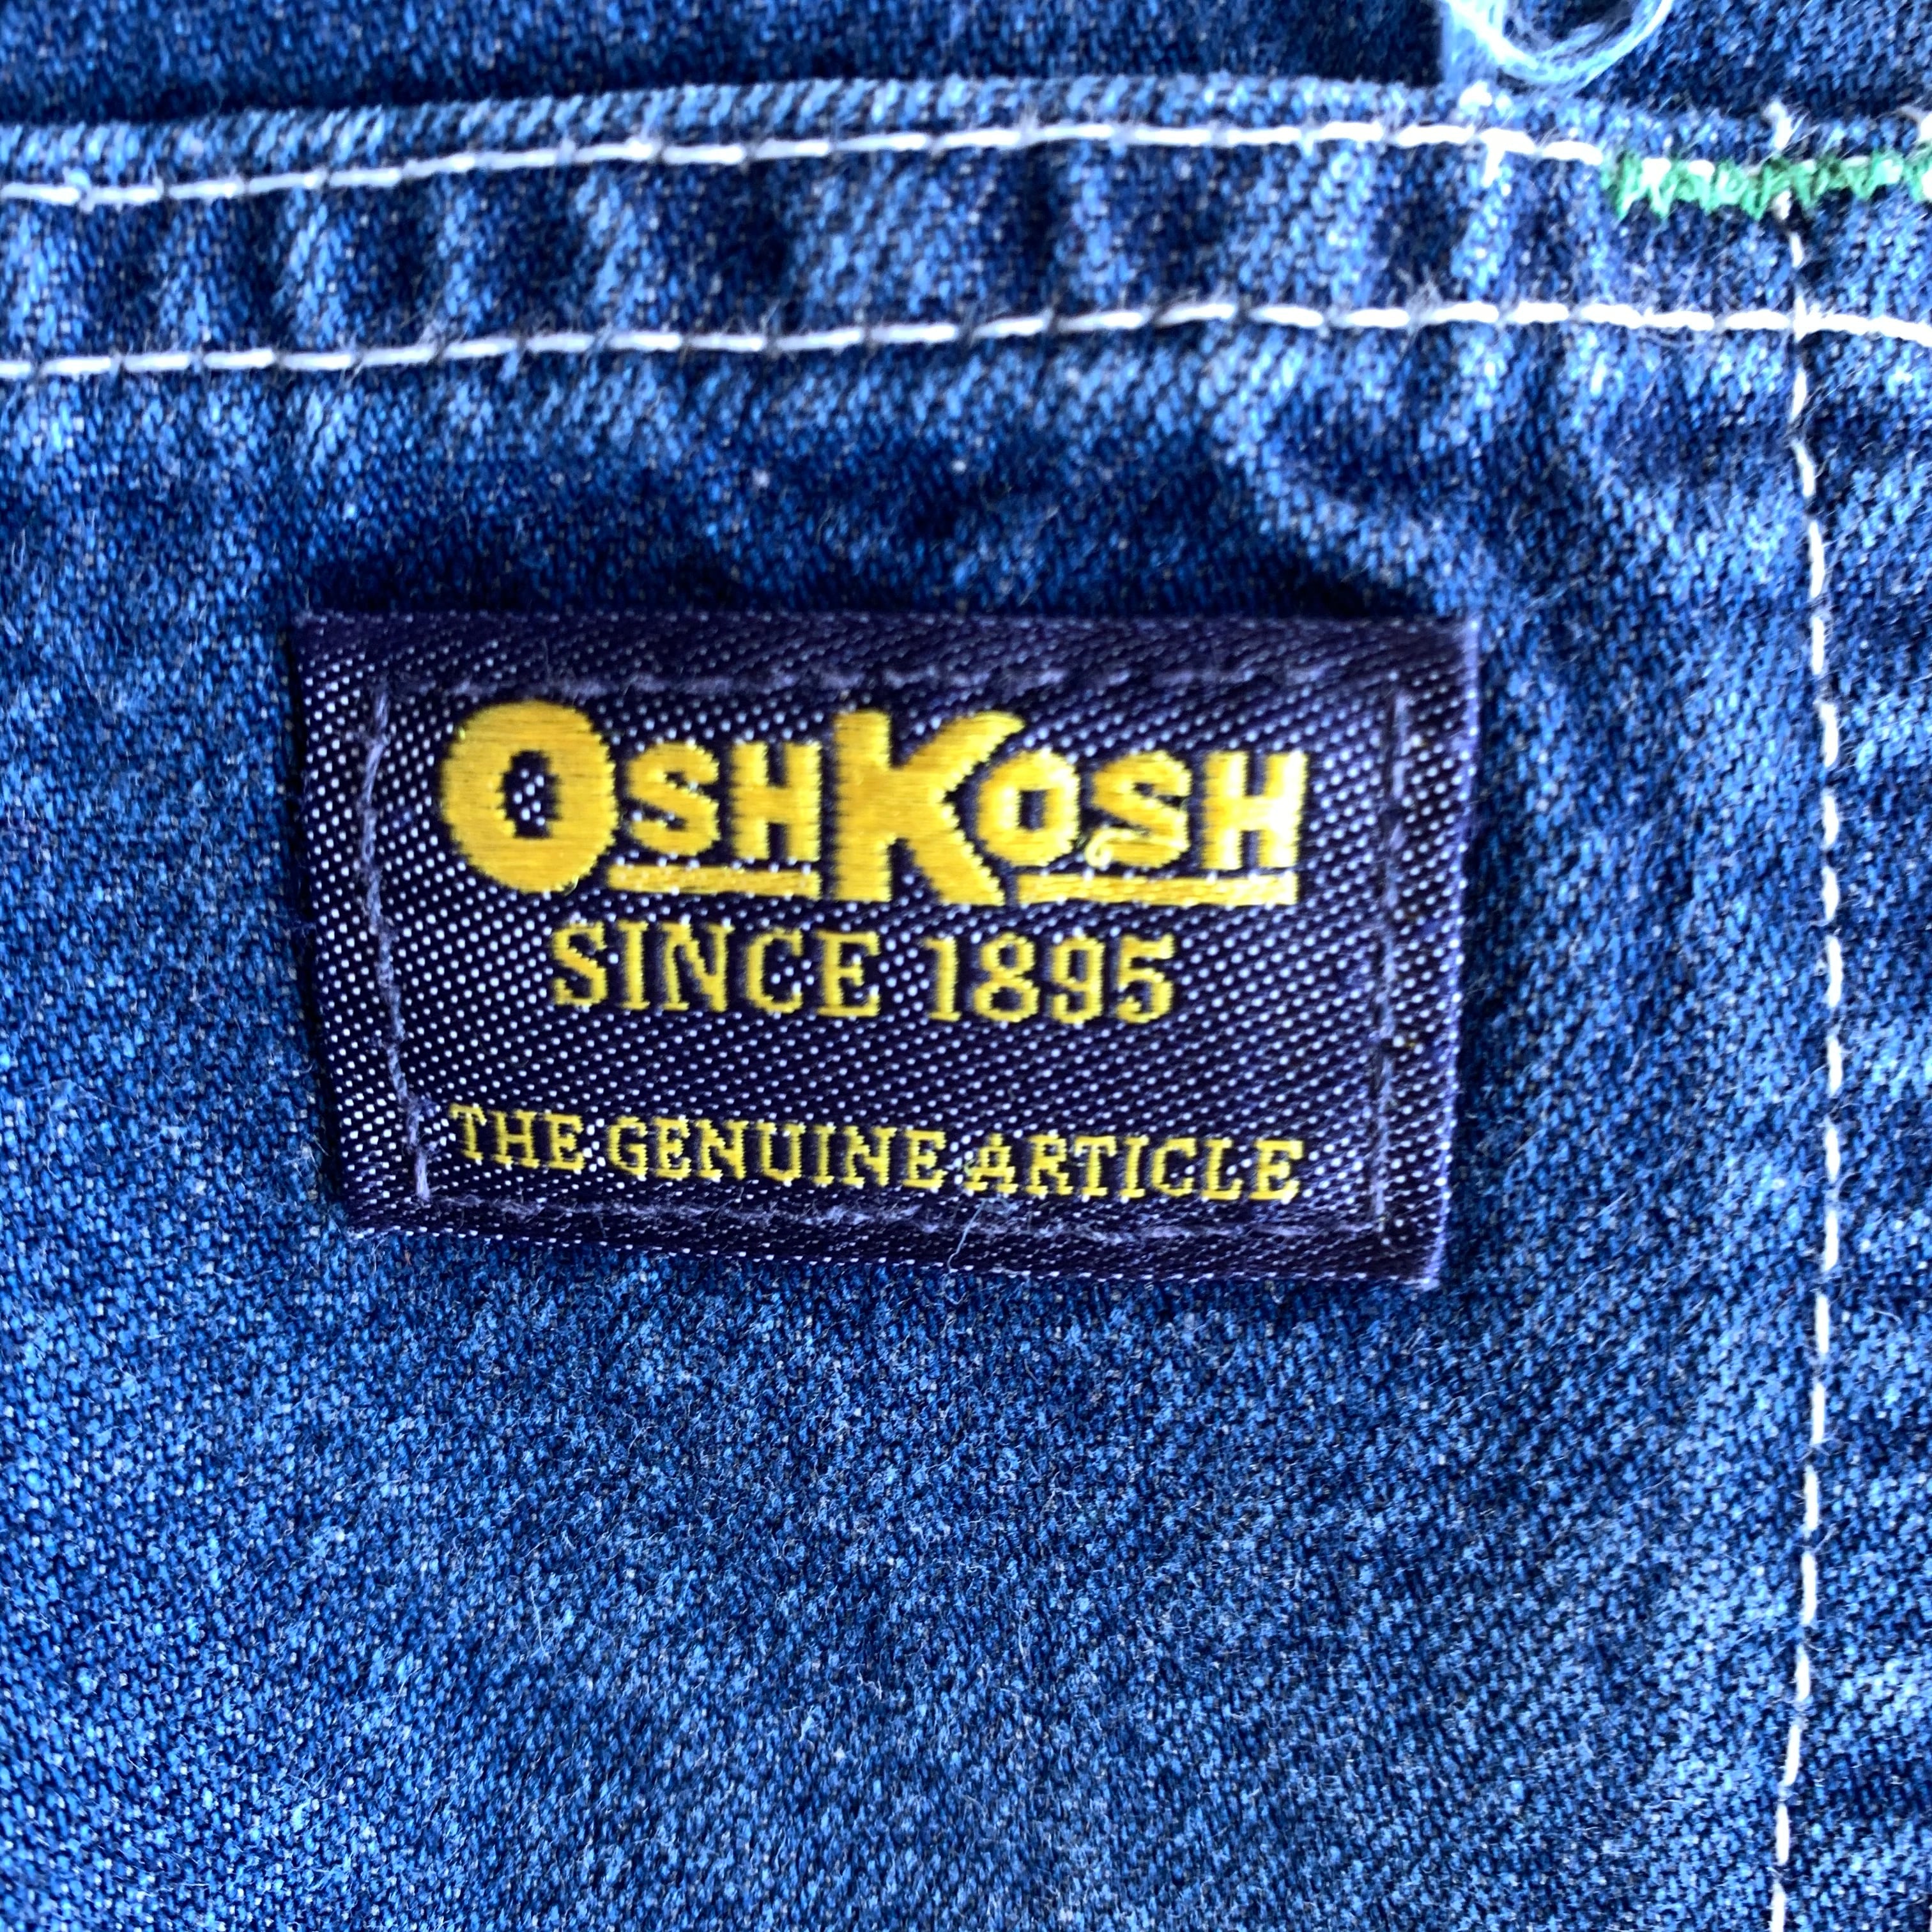 OshKosh made in U.S.A